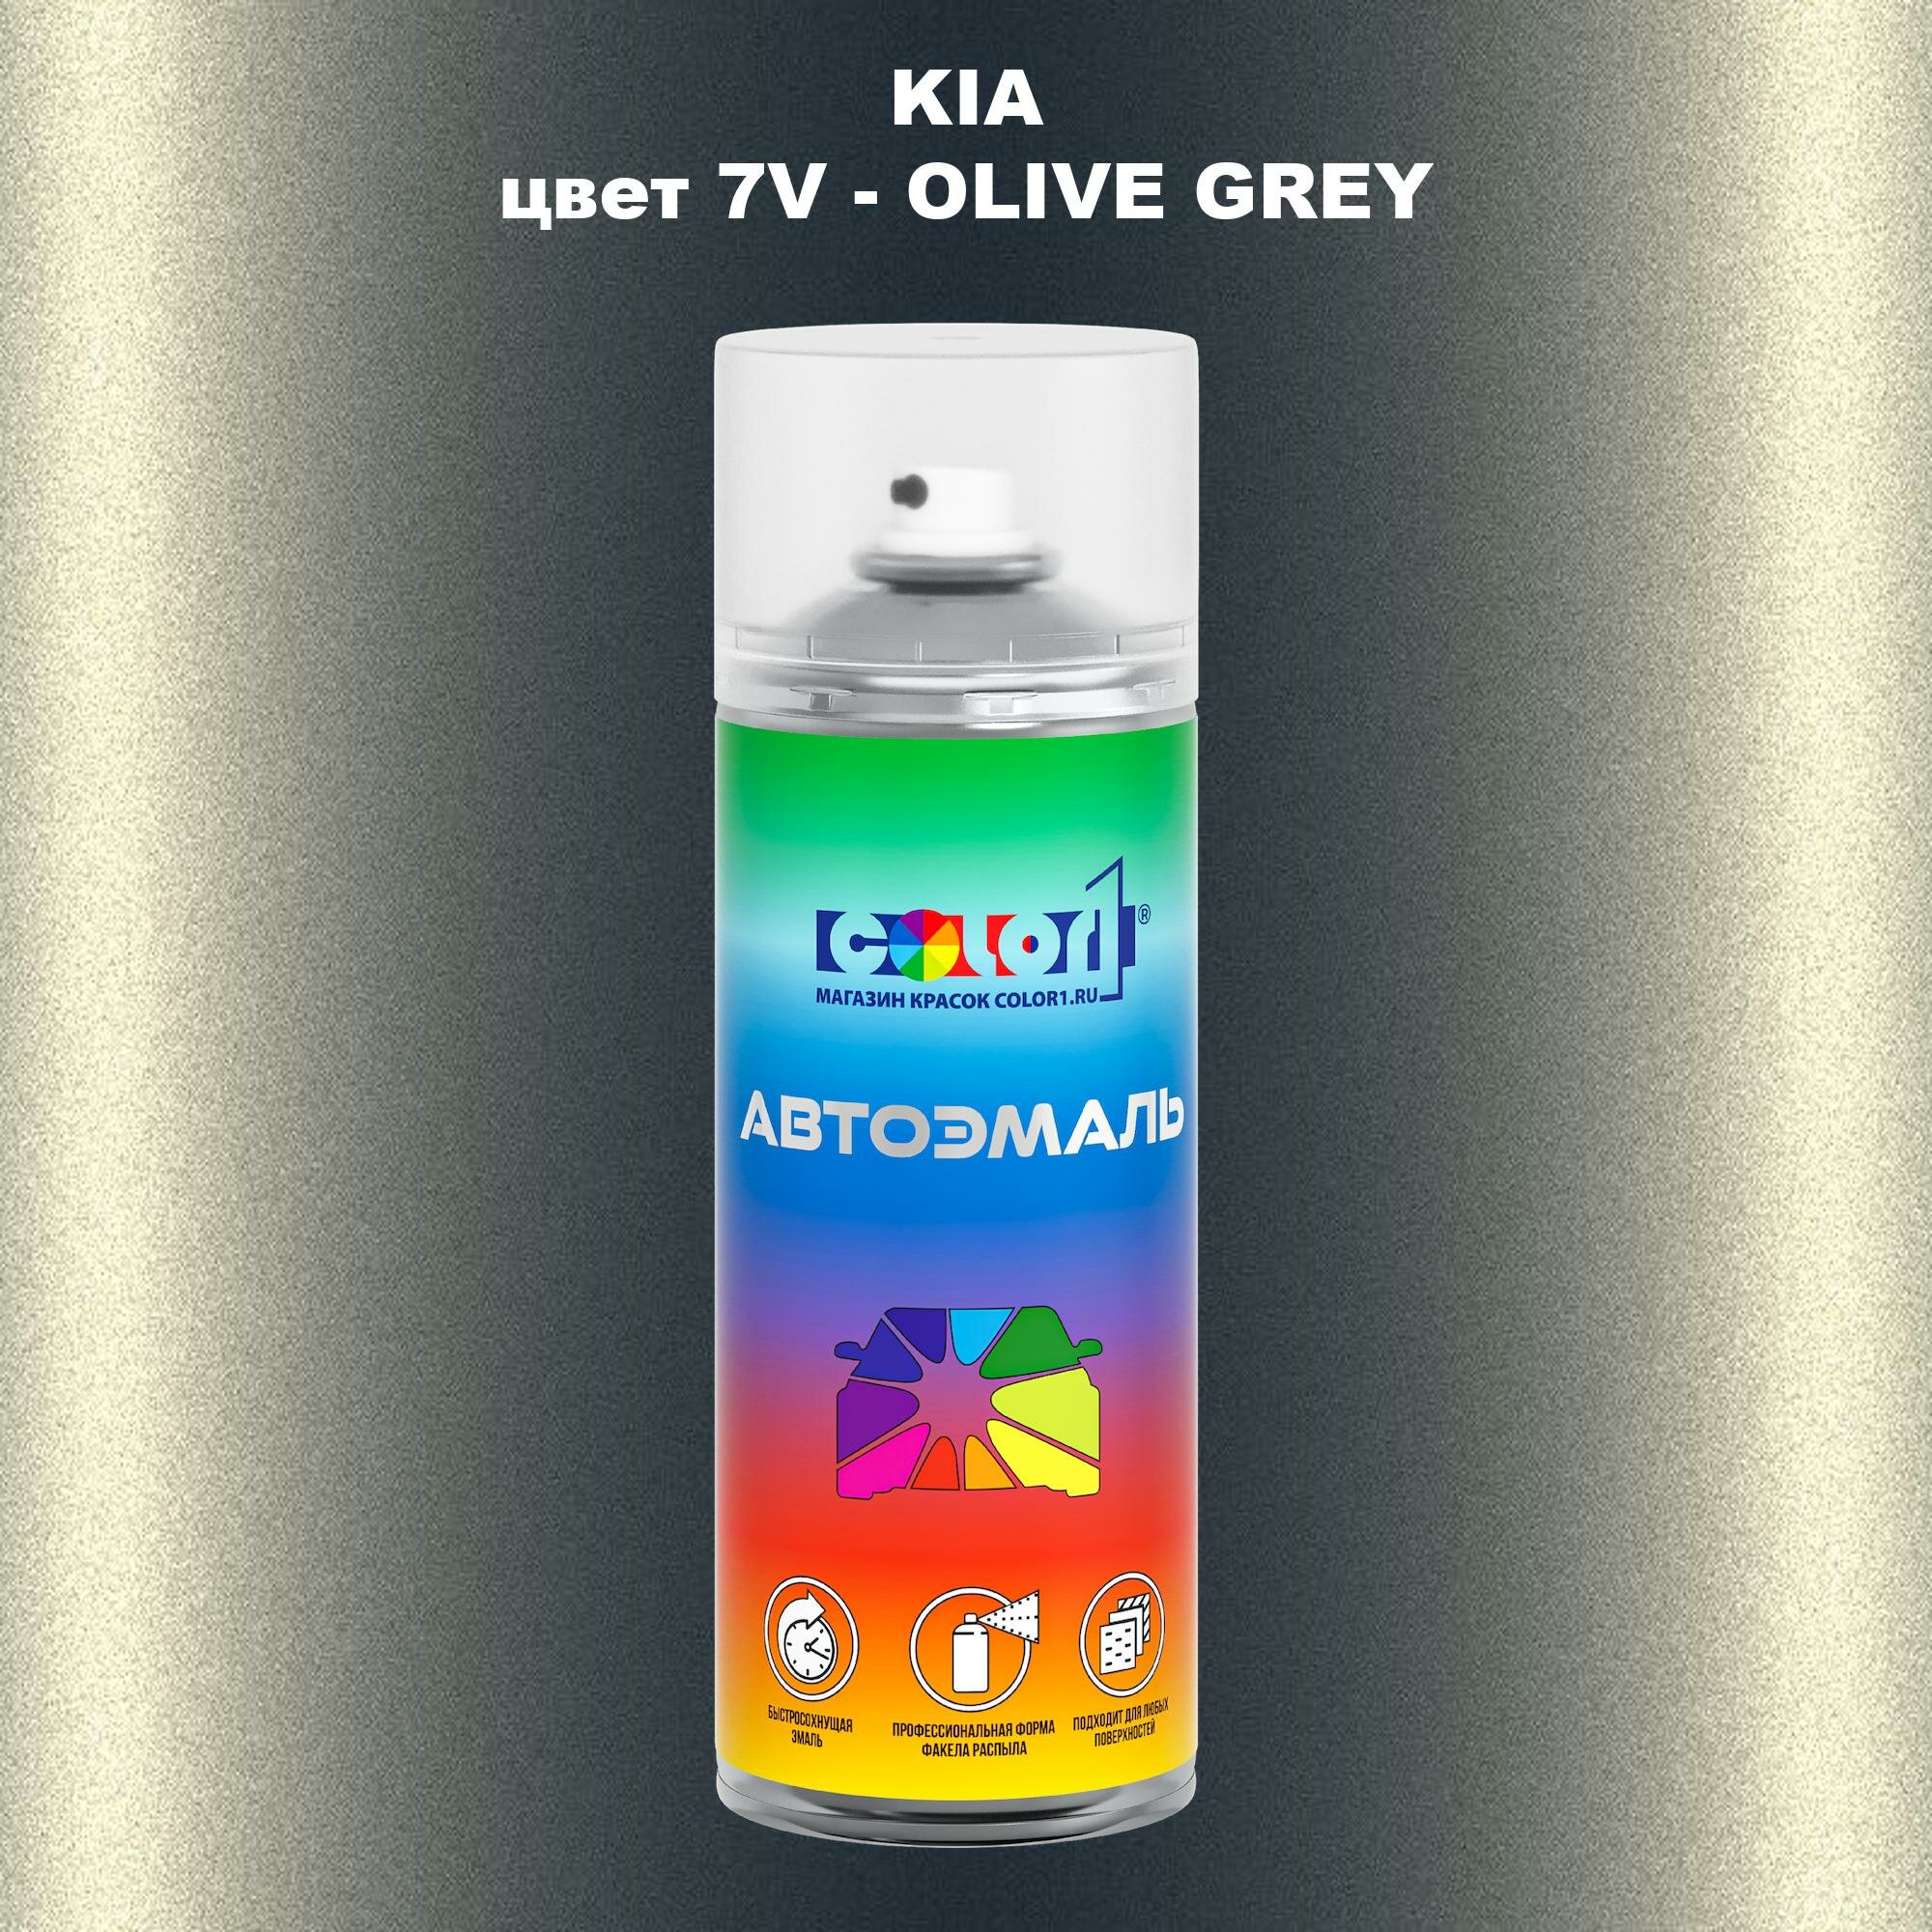 Аэрозольная краска COLOR1 для KIA, цвет 7V - OLIVE GREY